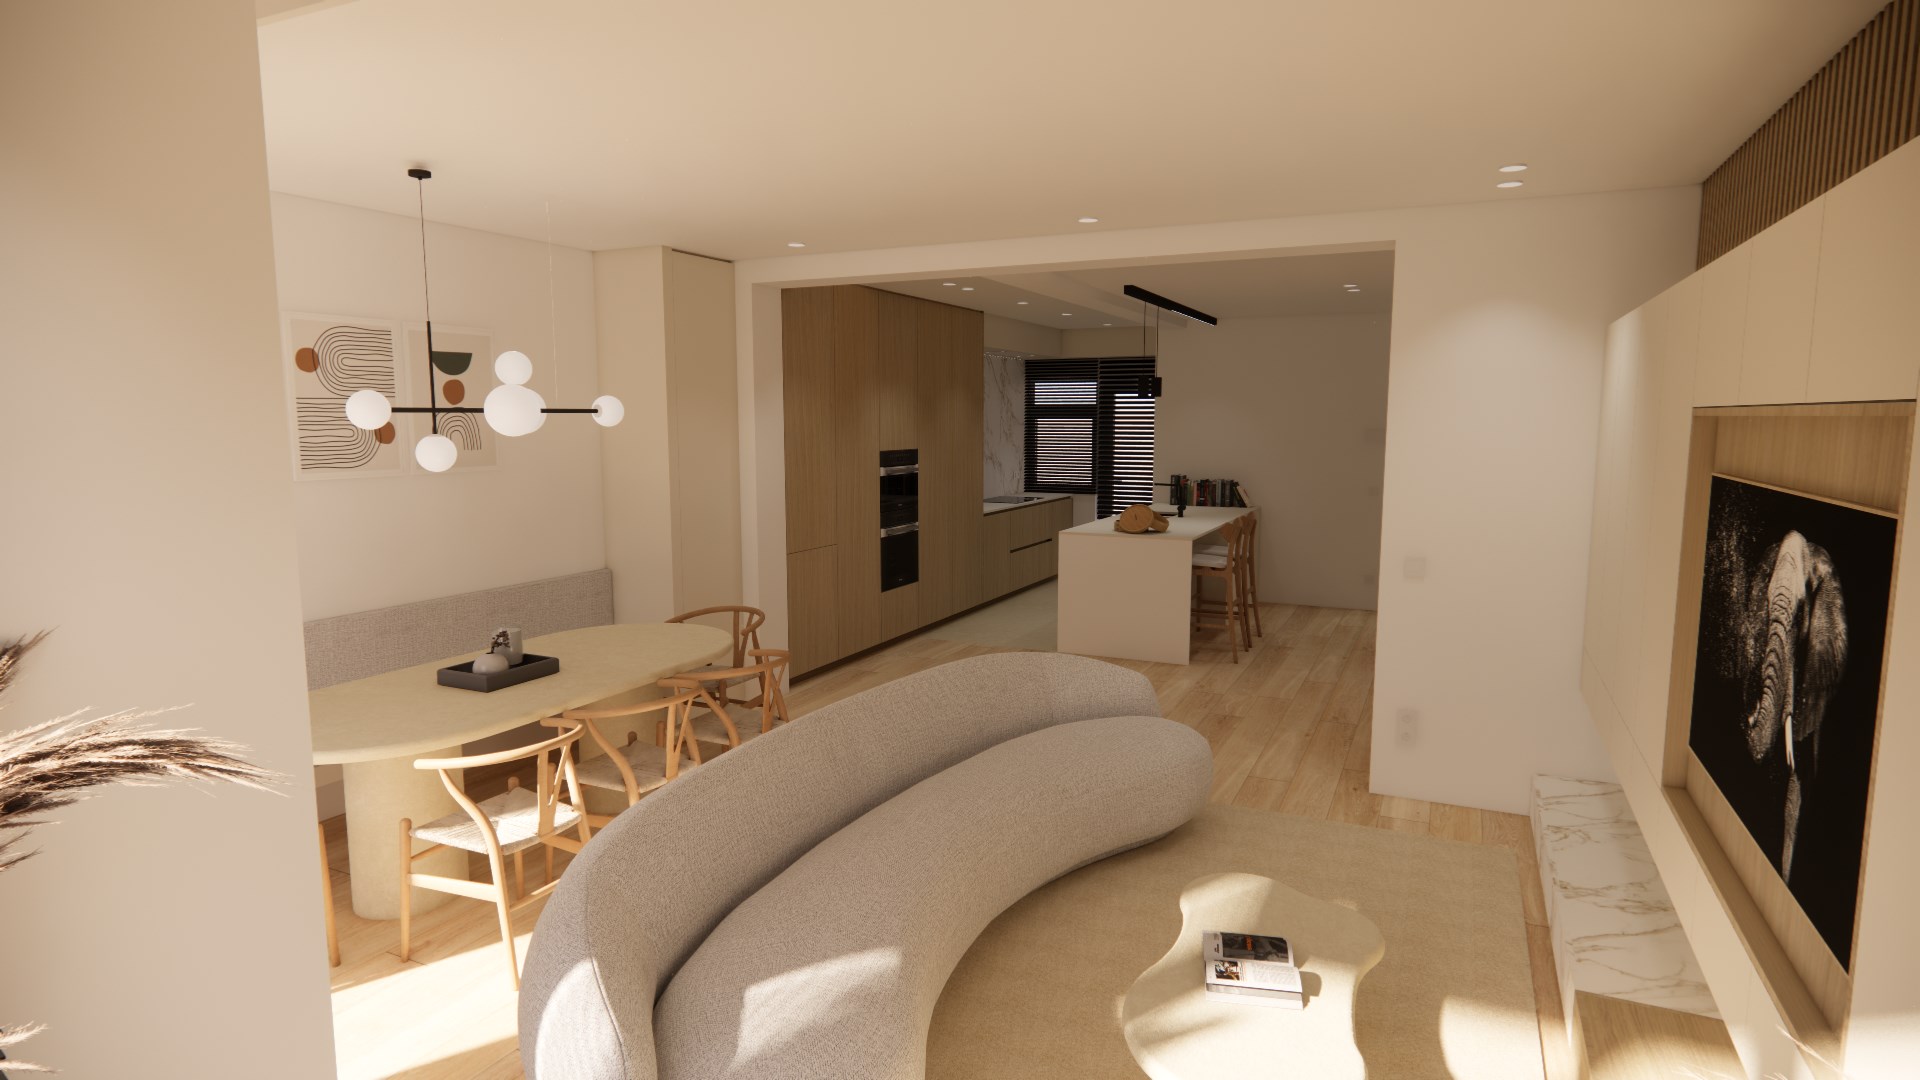 Volledig gerenoveerd appartement met 4 slaapkamers centraal gelegen in centrum van Knokke nabij de Dumortierlaan met zijdelings zeezicht. 